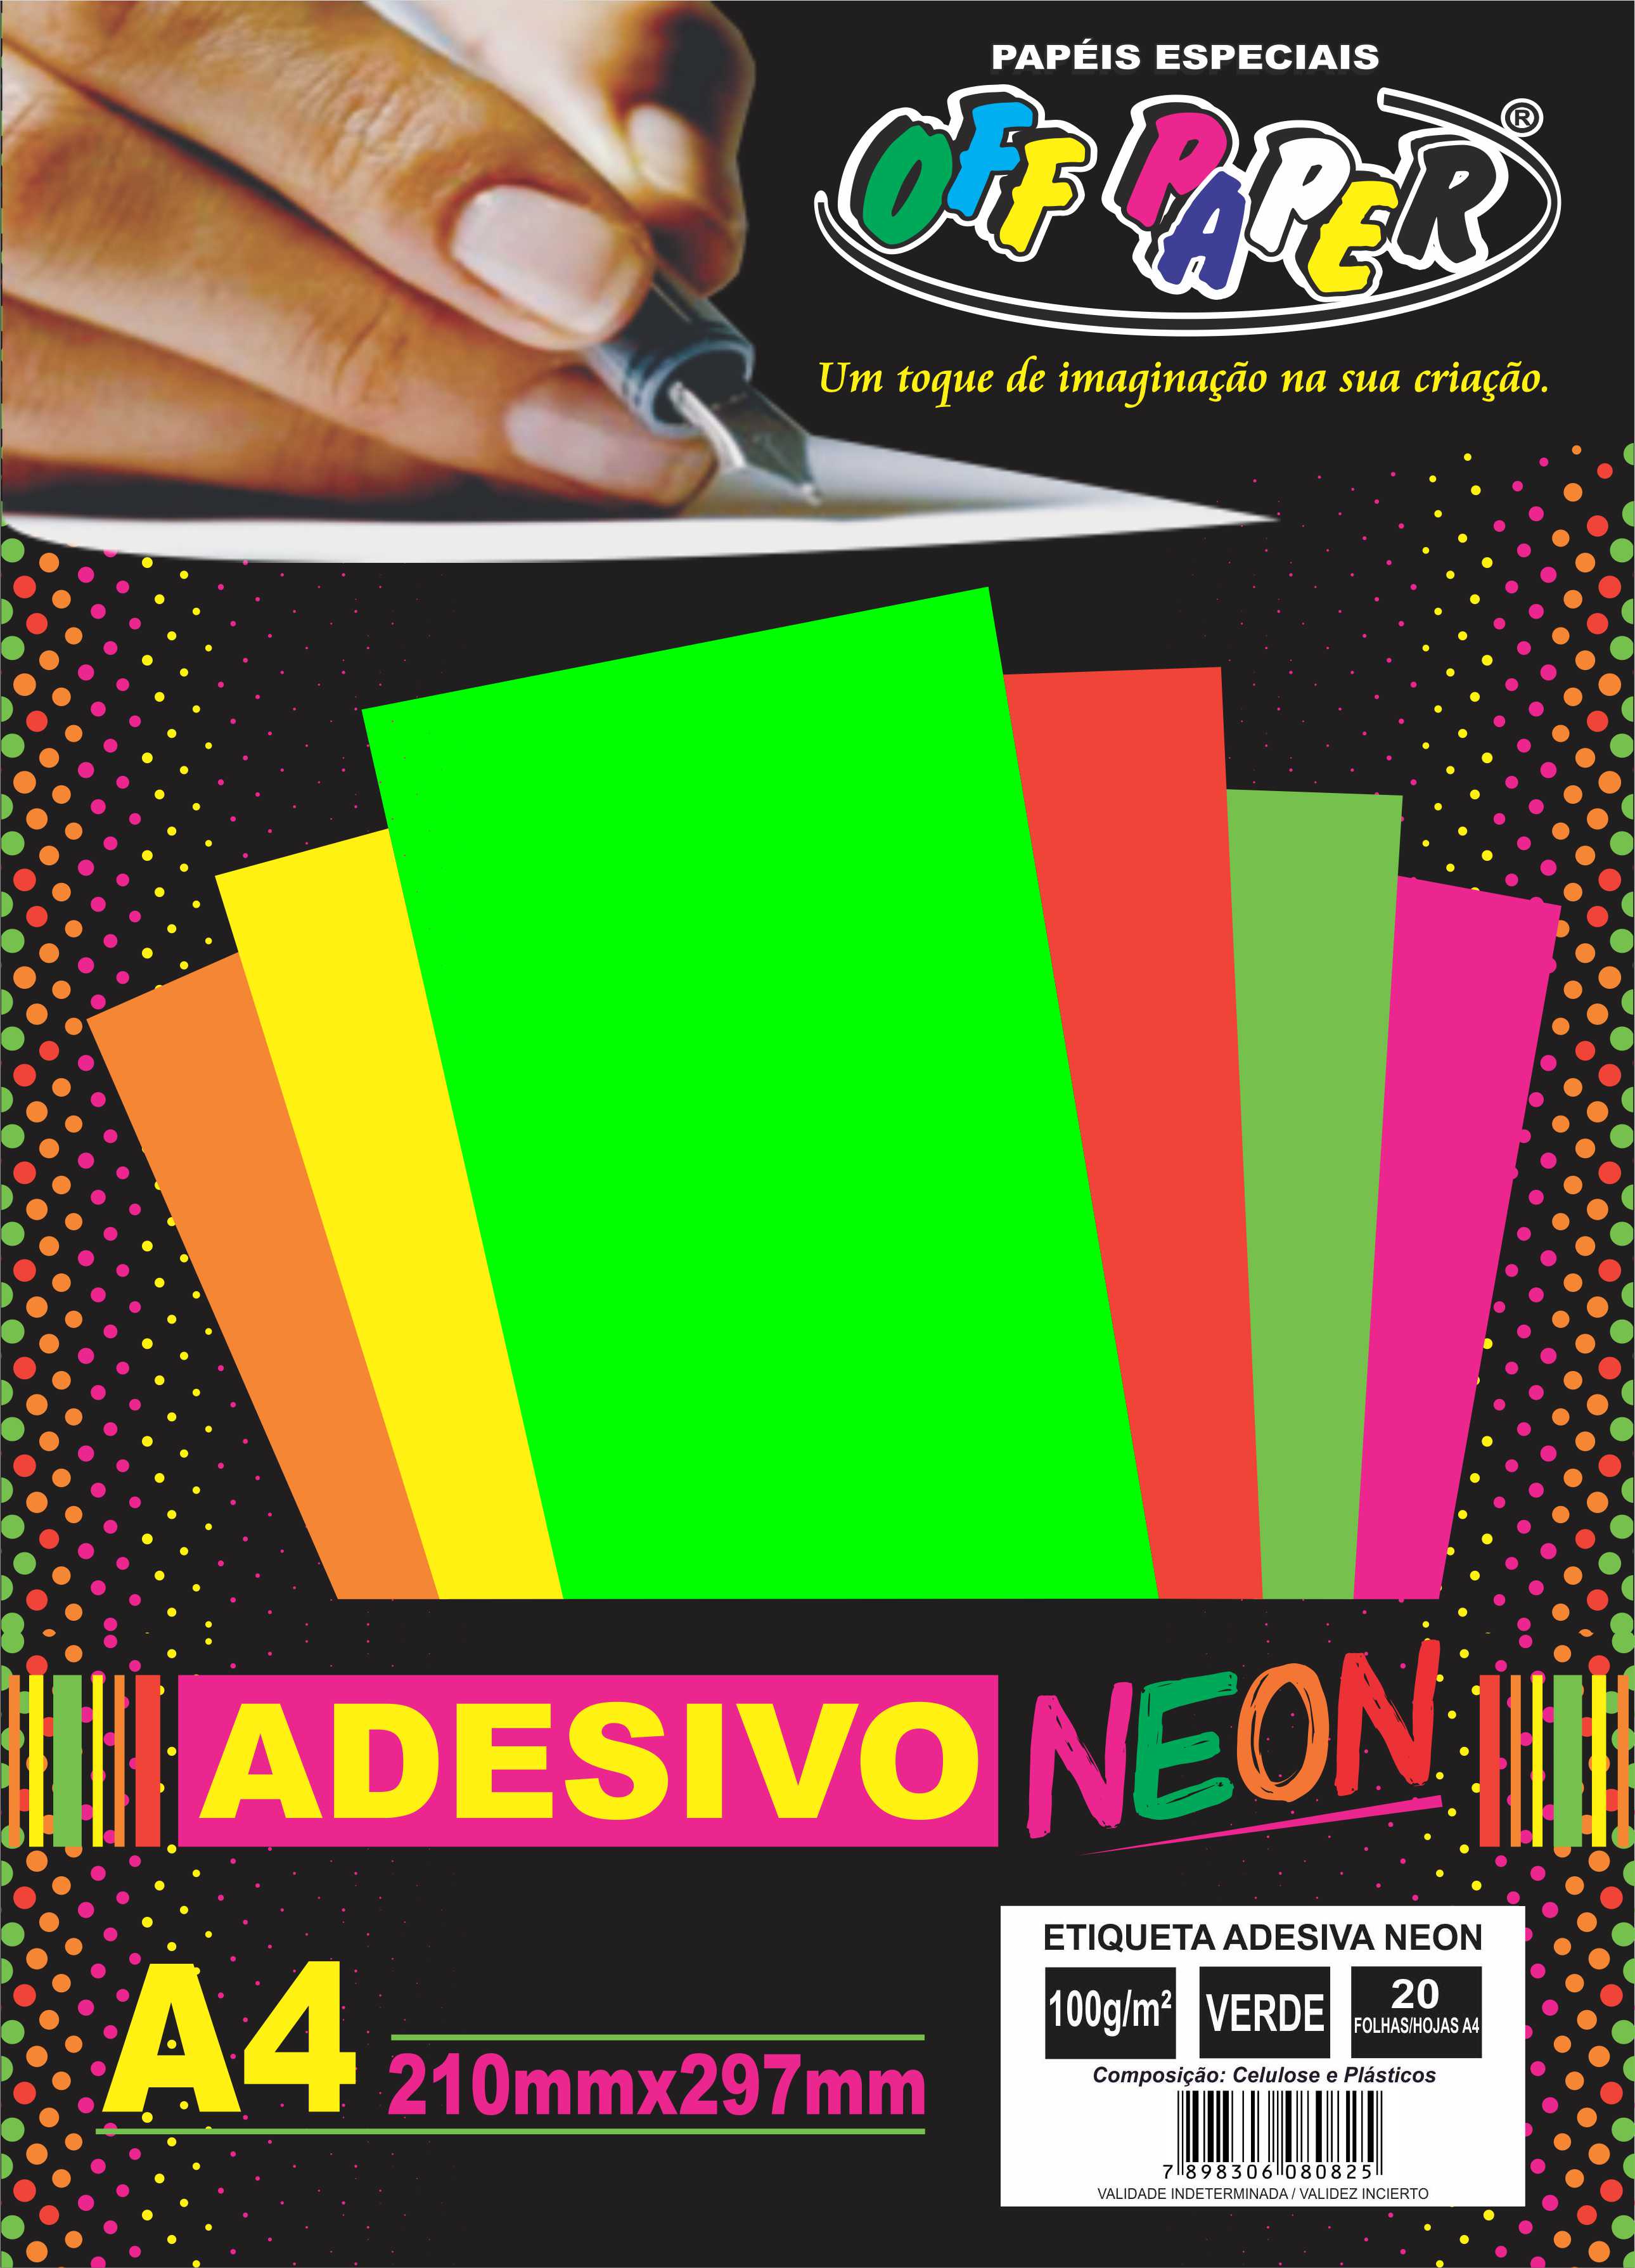 Adhesivo Neón A4